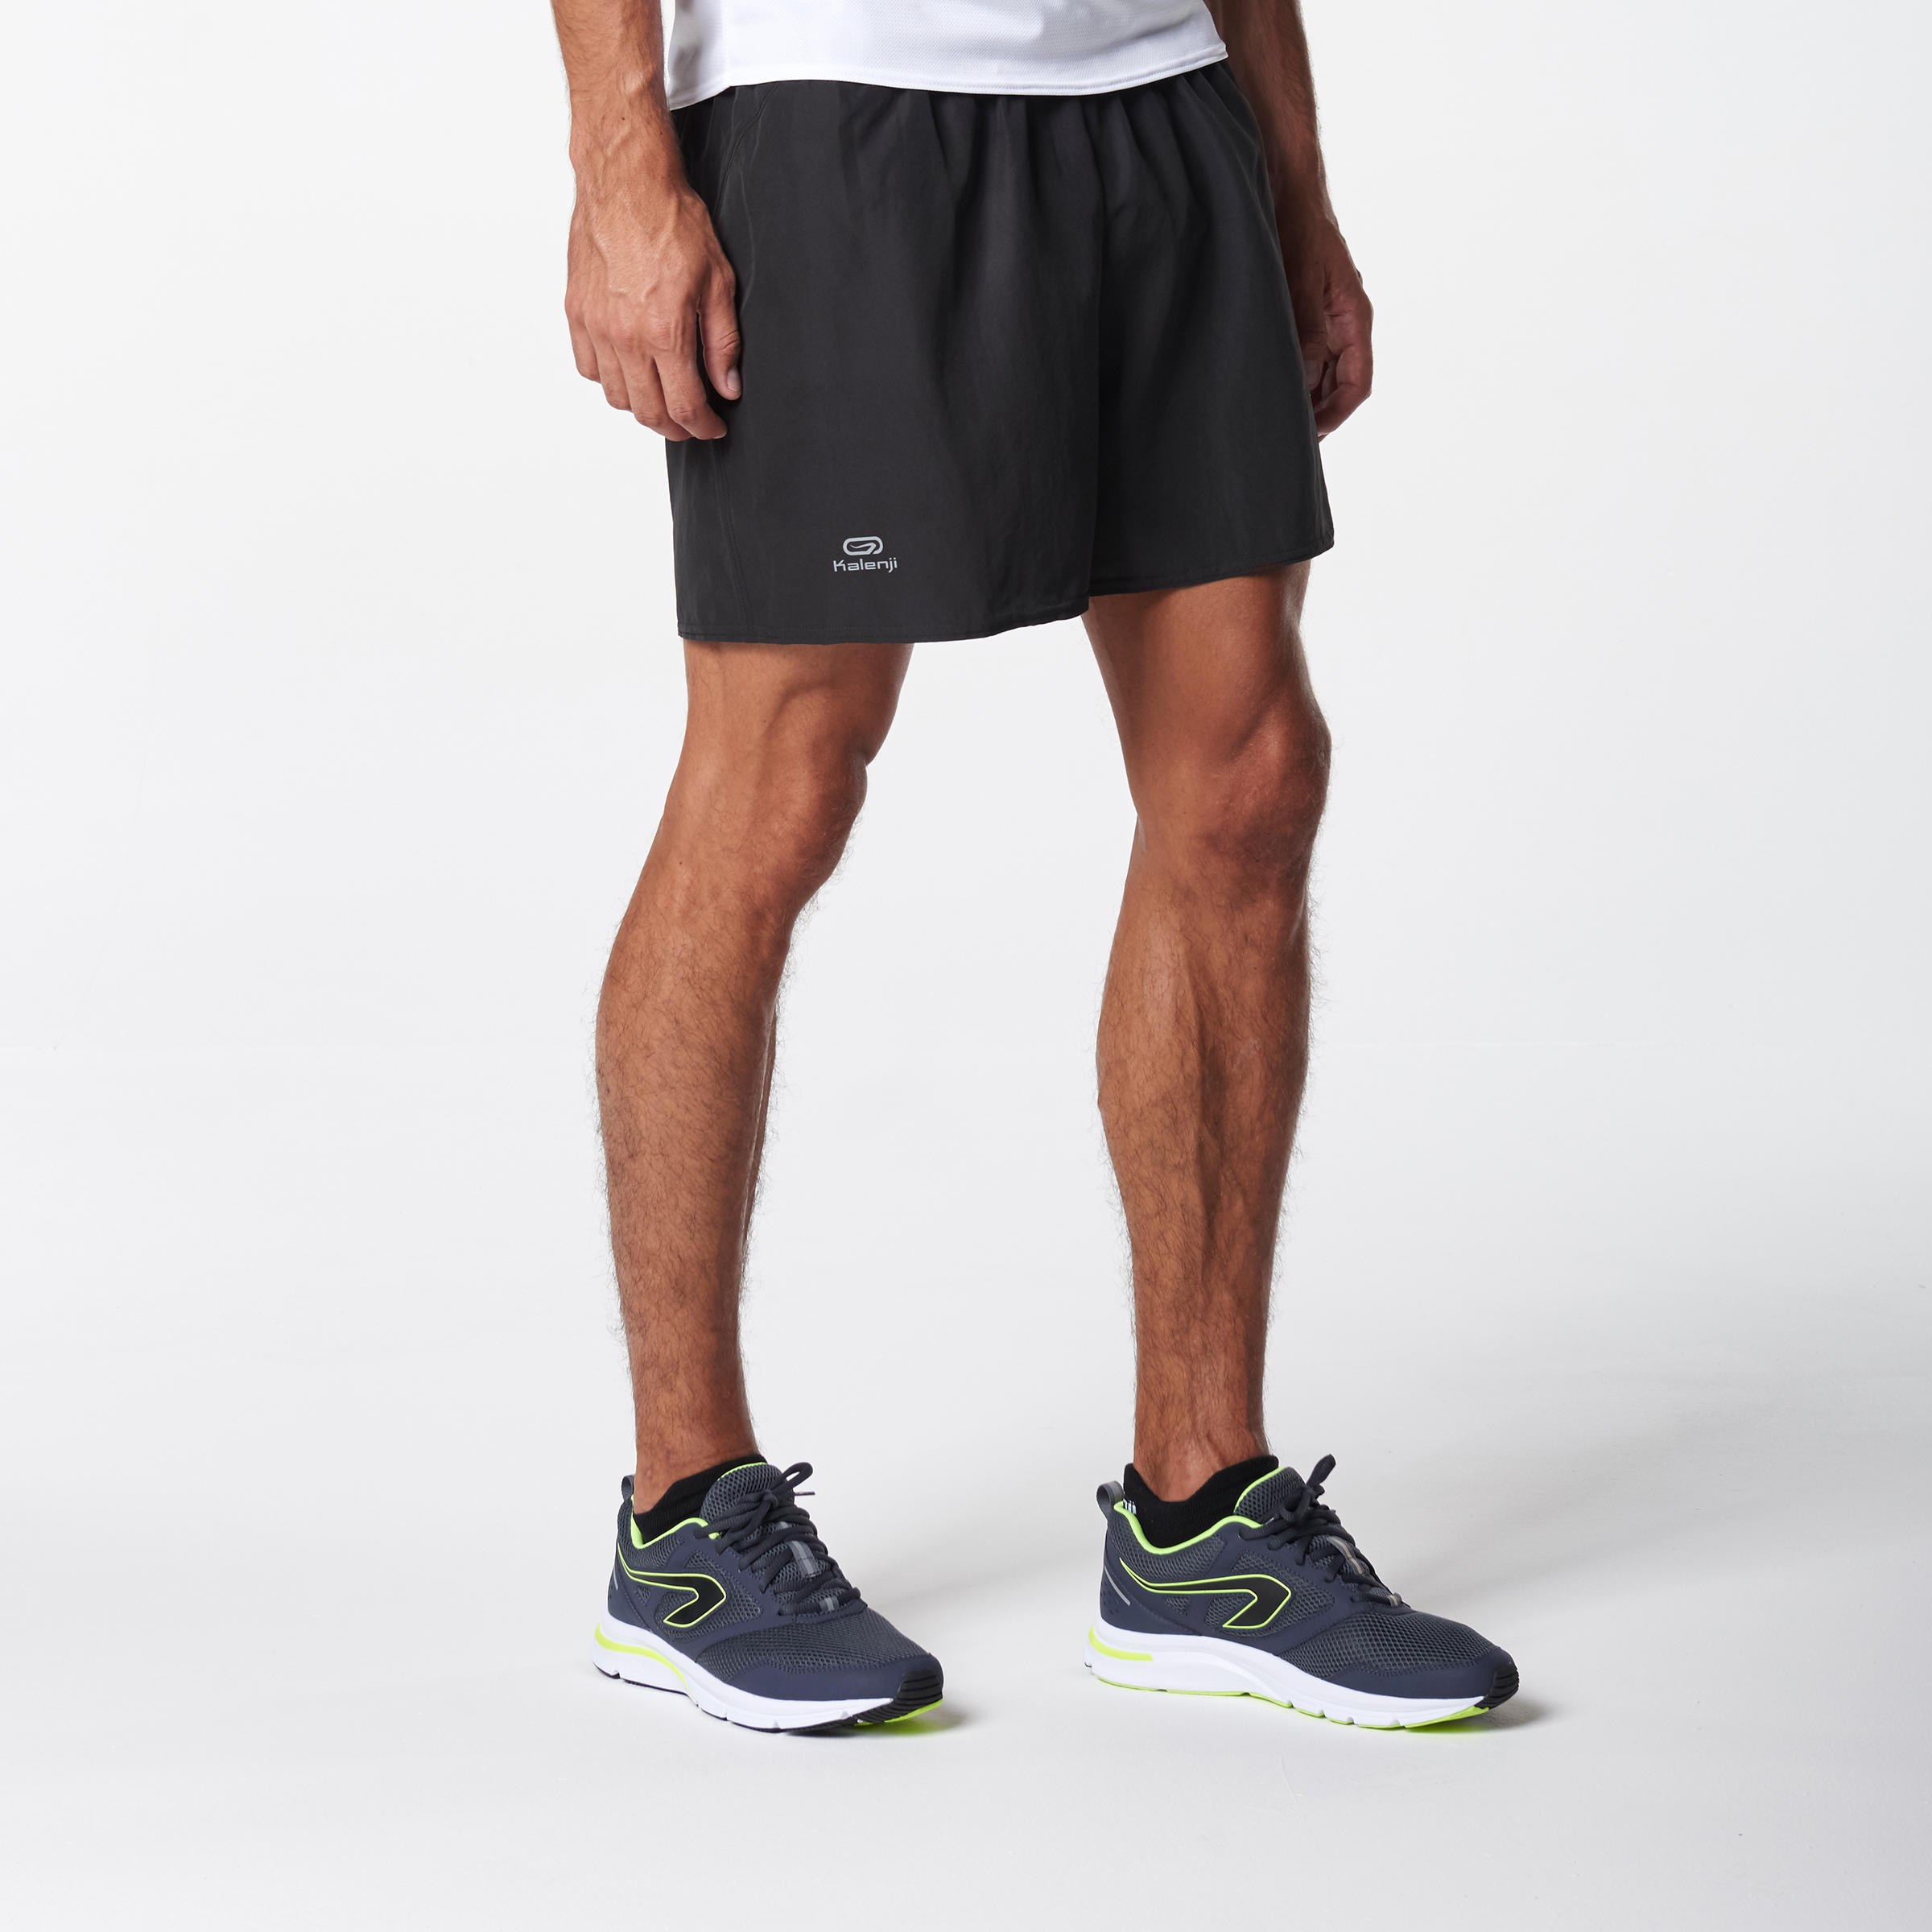 decathlon running shorts mens